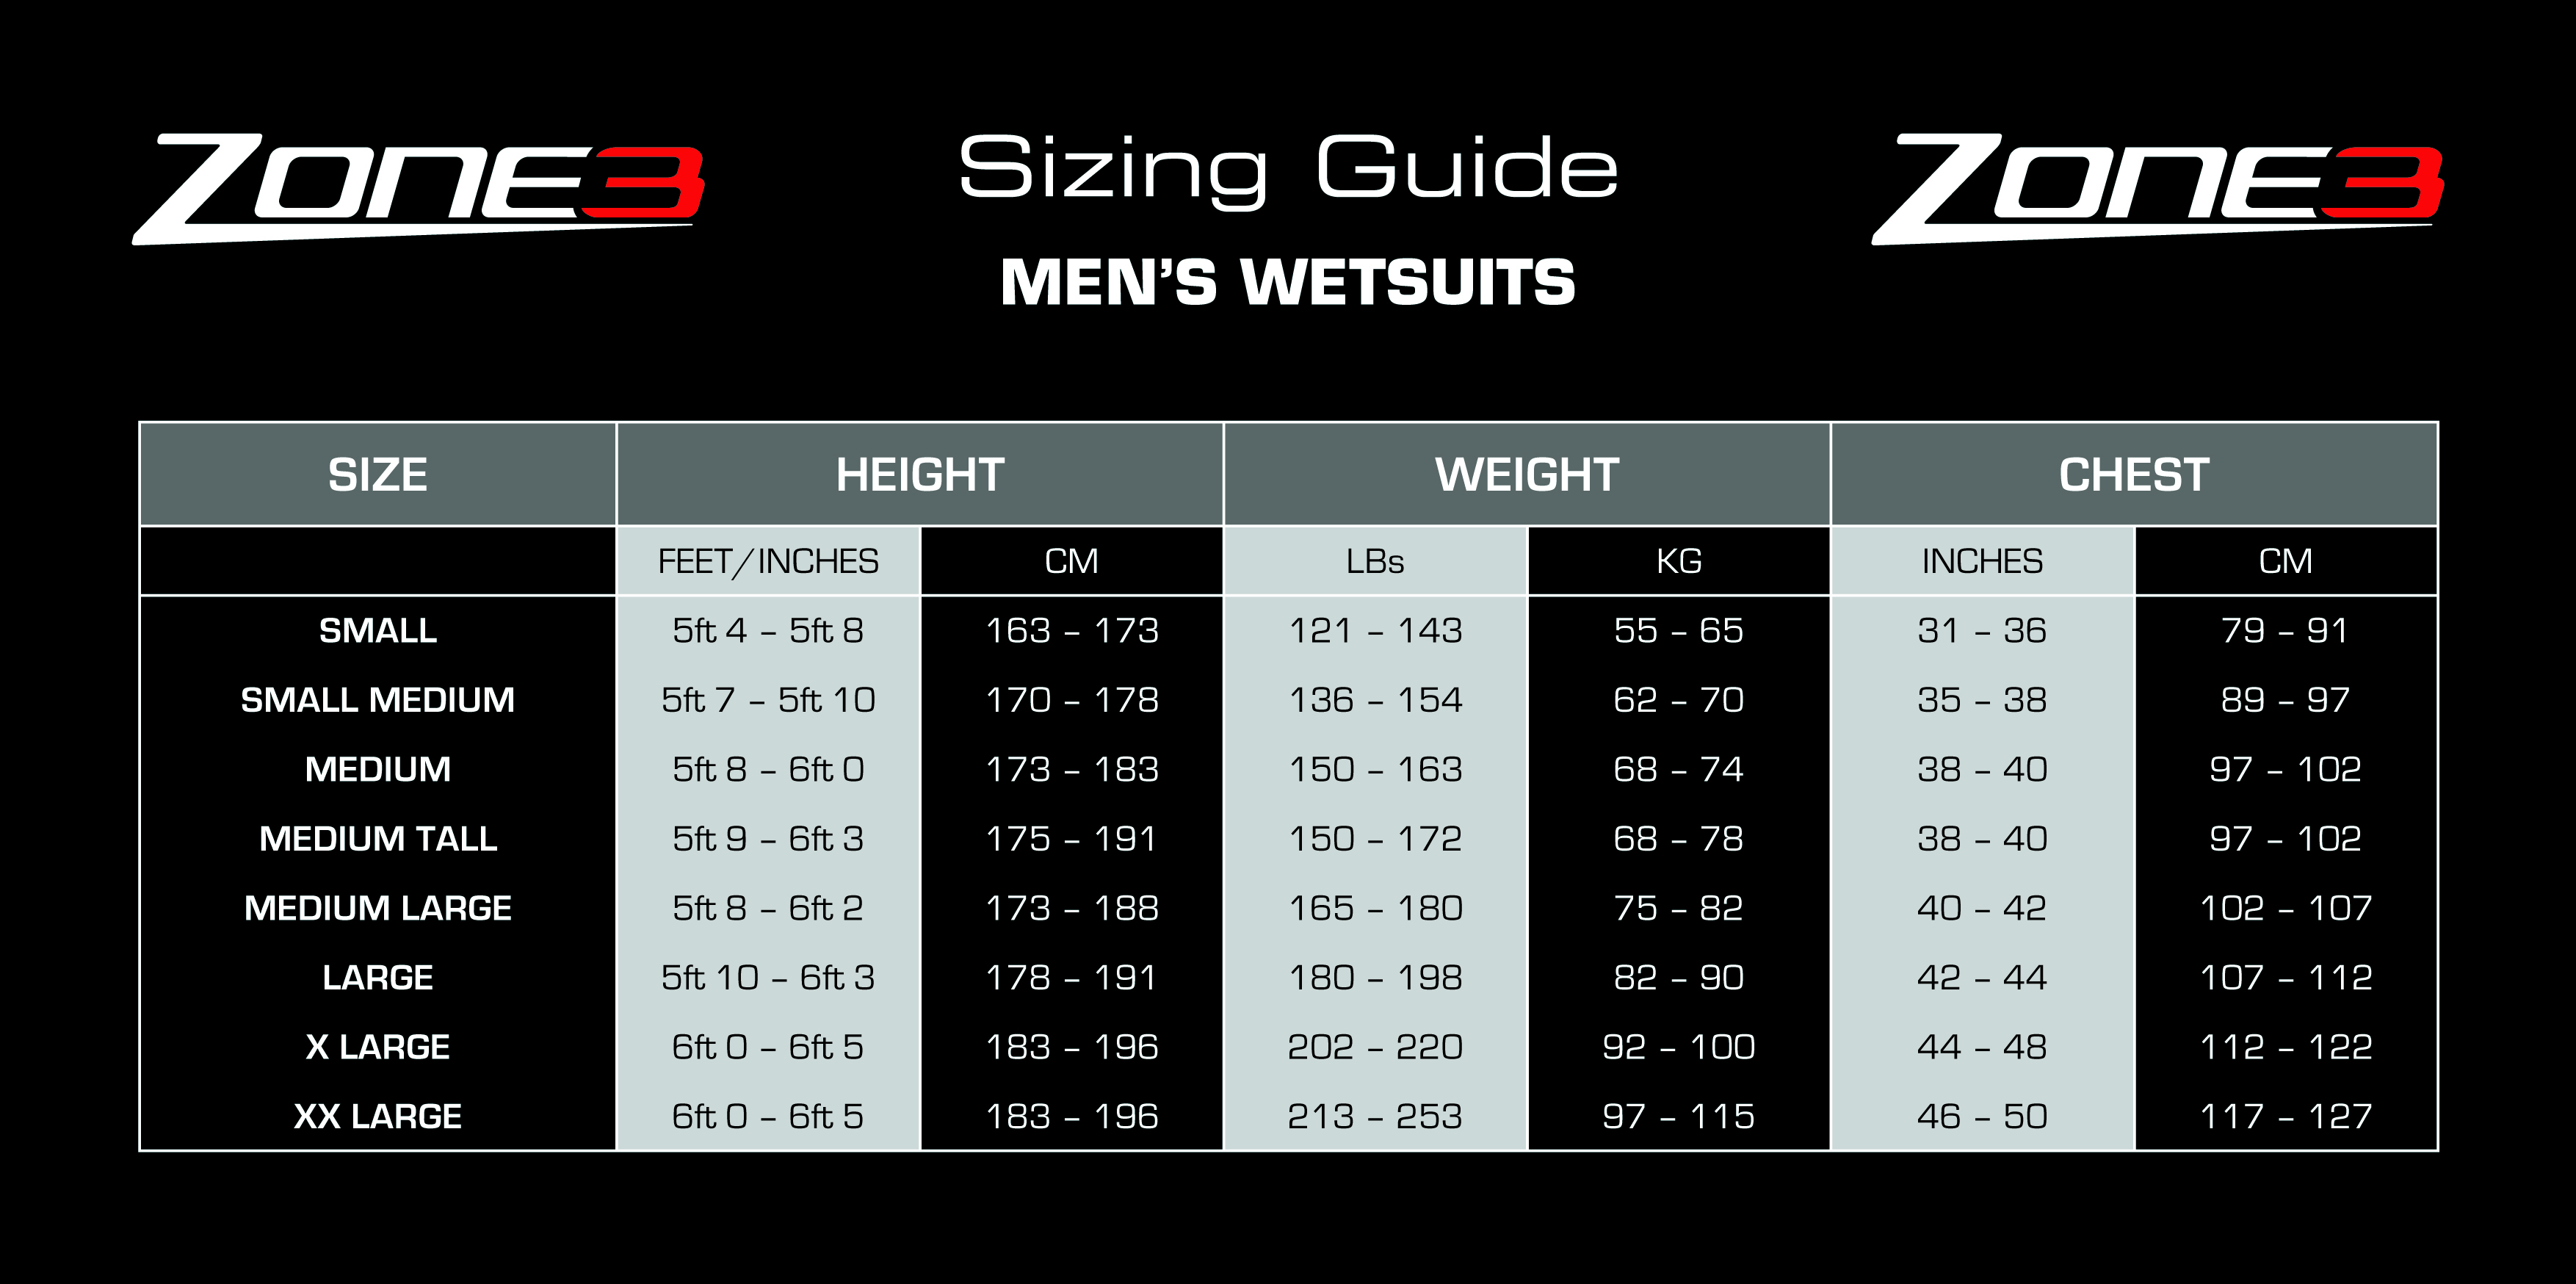 2xu Wetsuit Size Chart